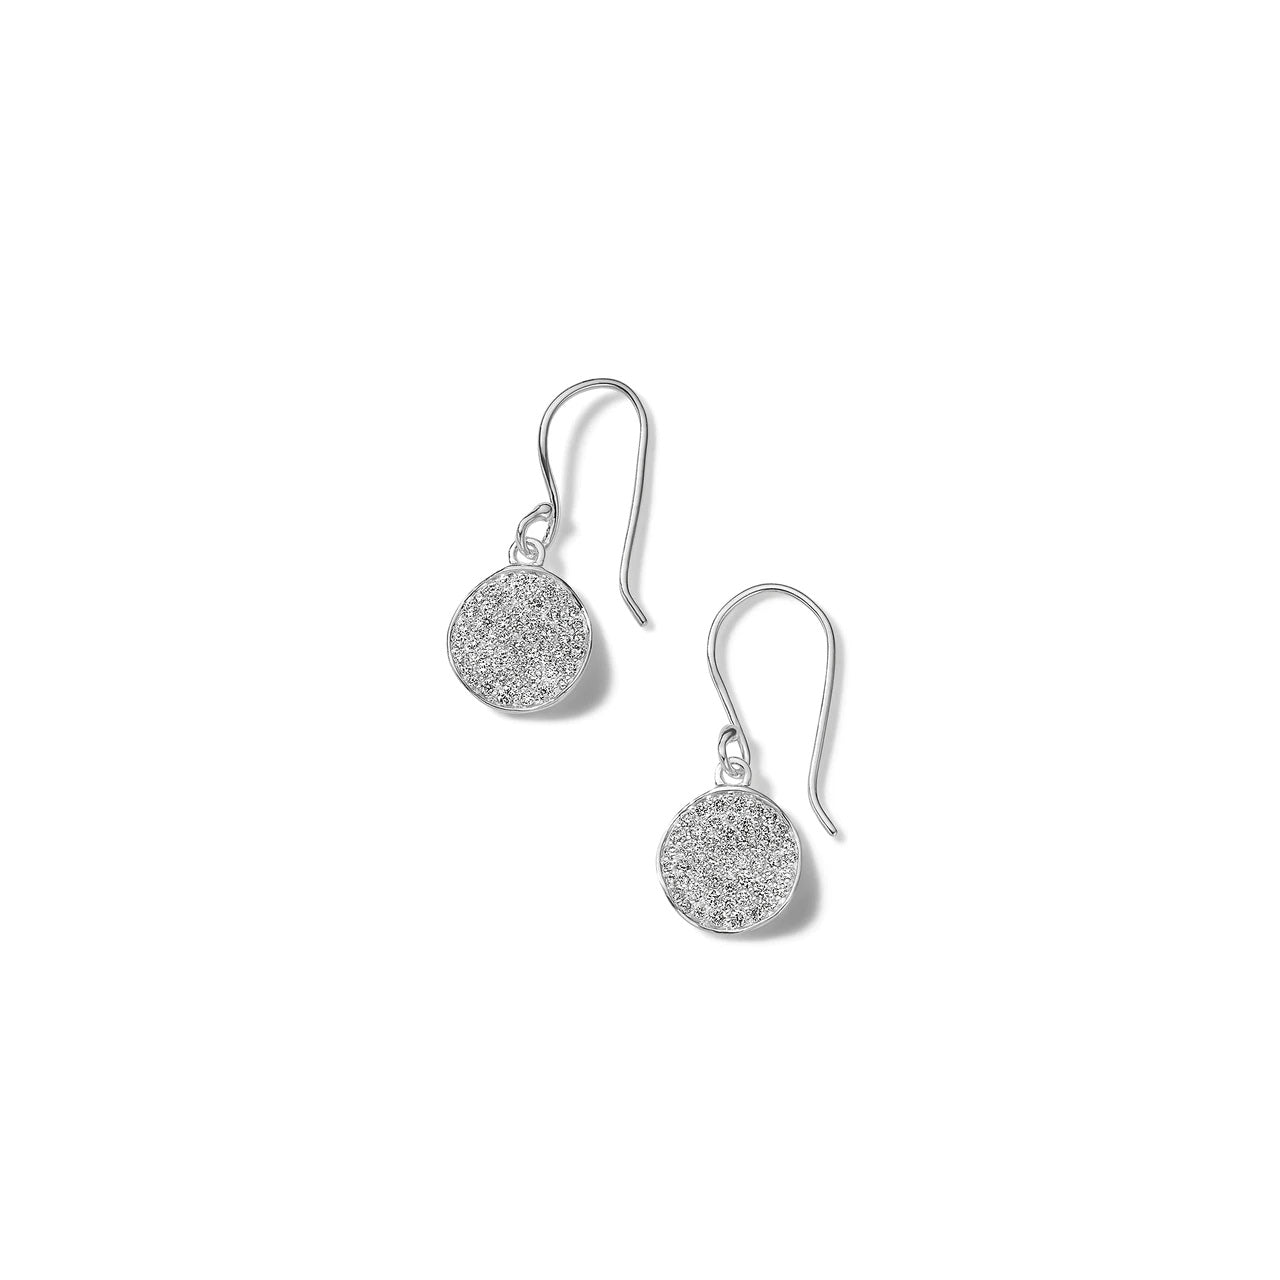 IPPOLITA Stardust Sterling Silver Mini Flower Drop Earrings with Diamonds